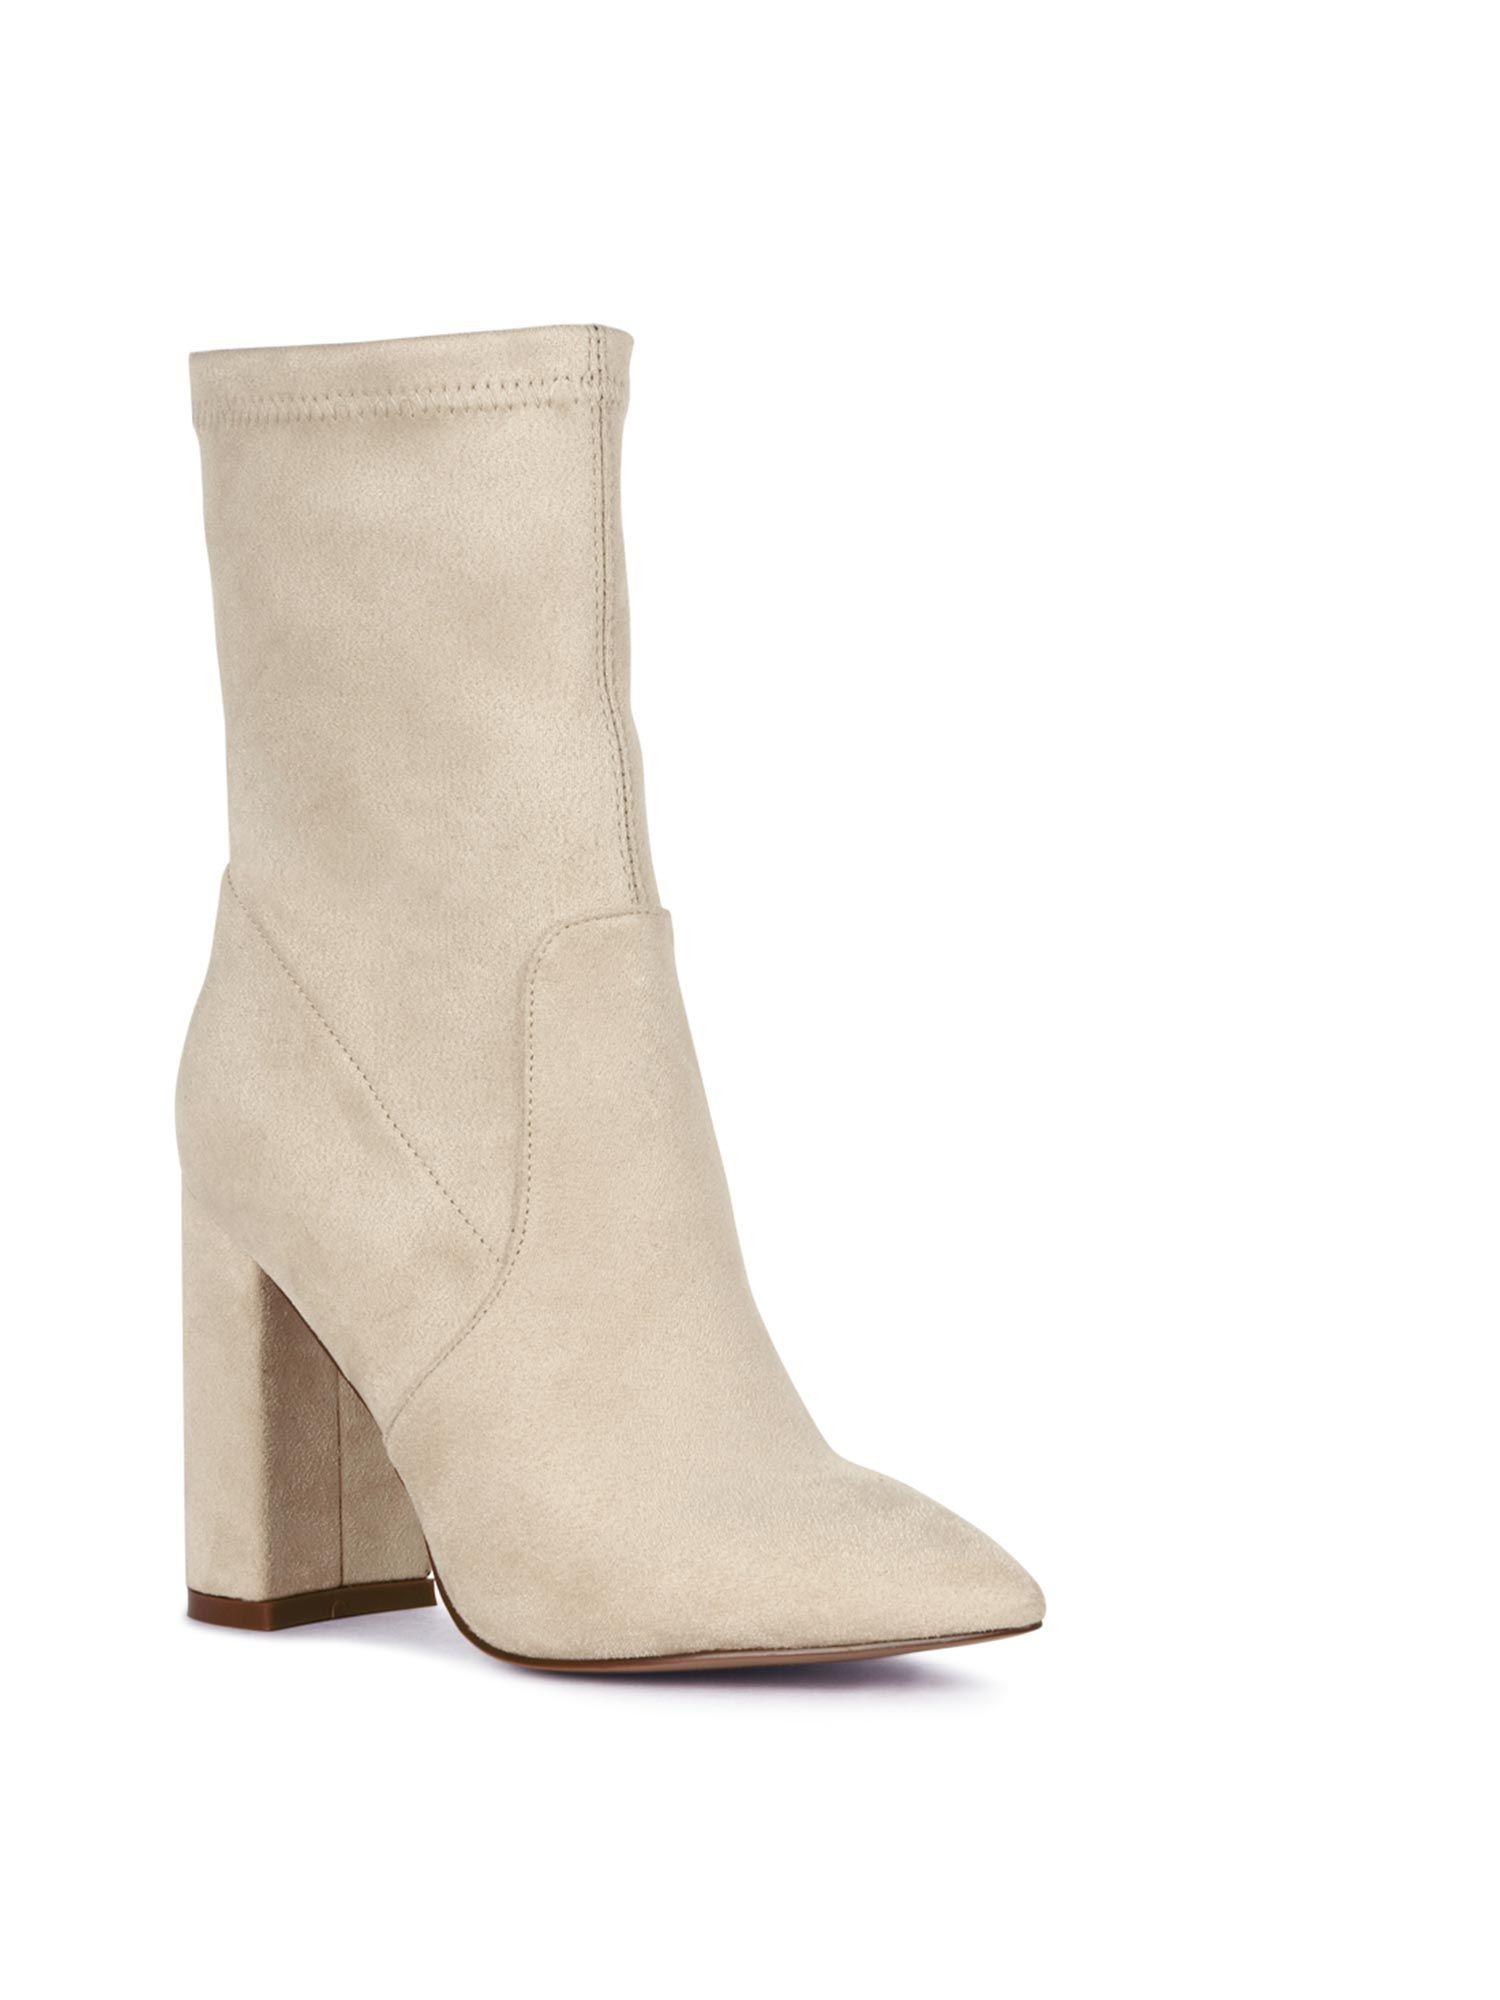 high block heeled boot in beige